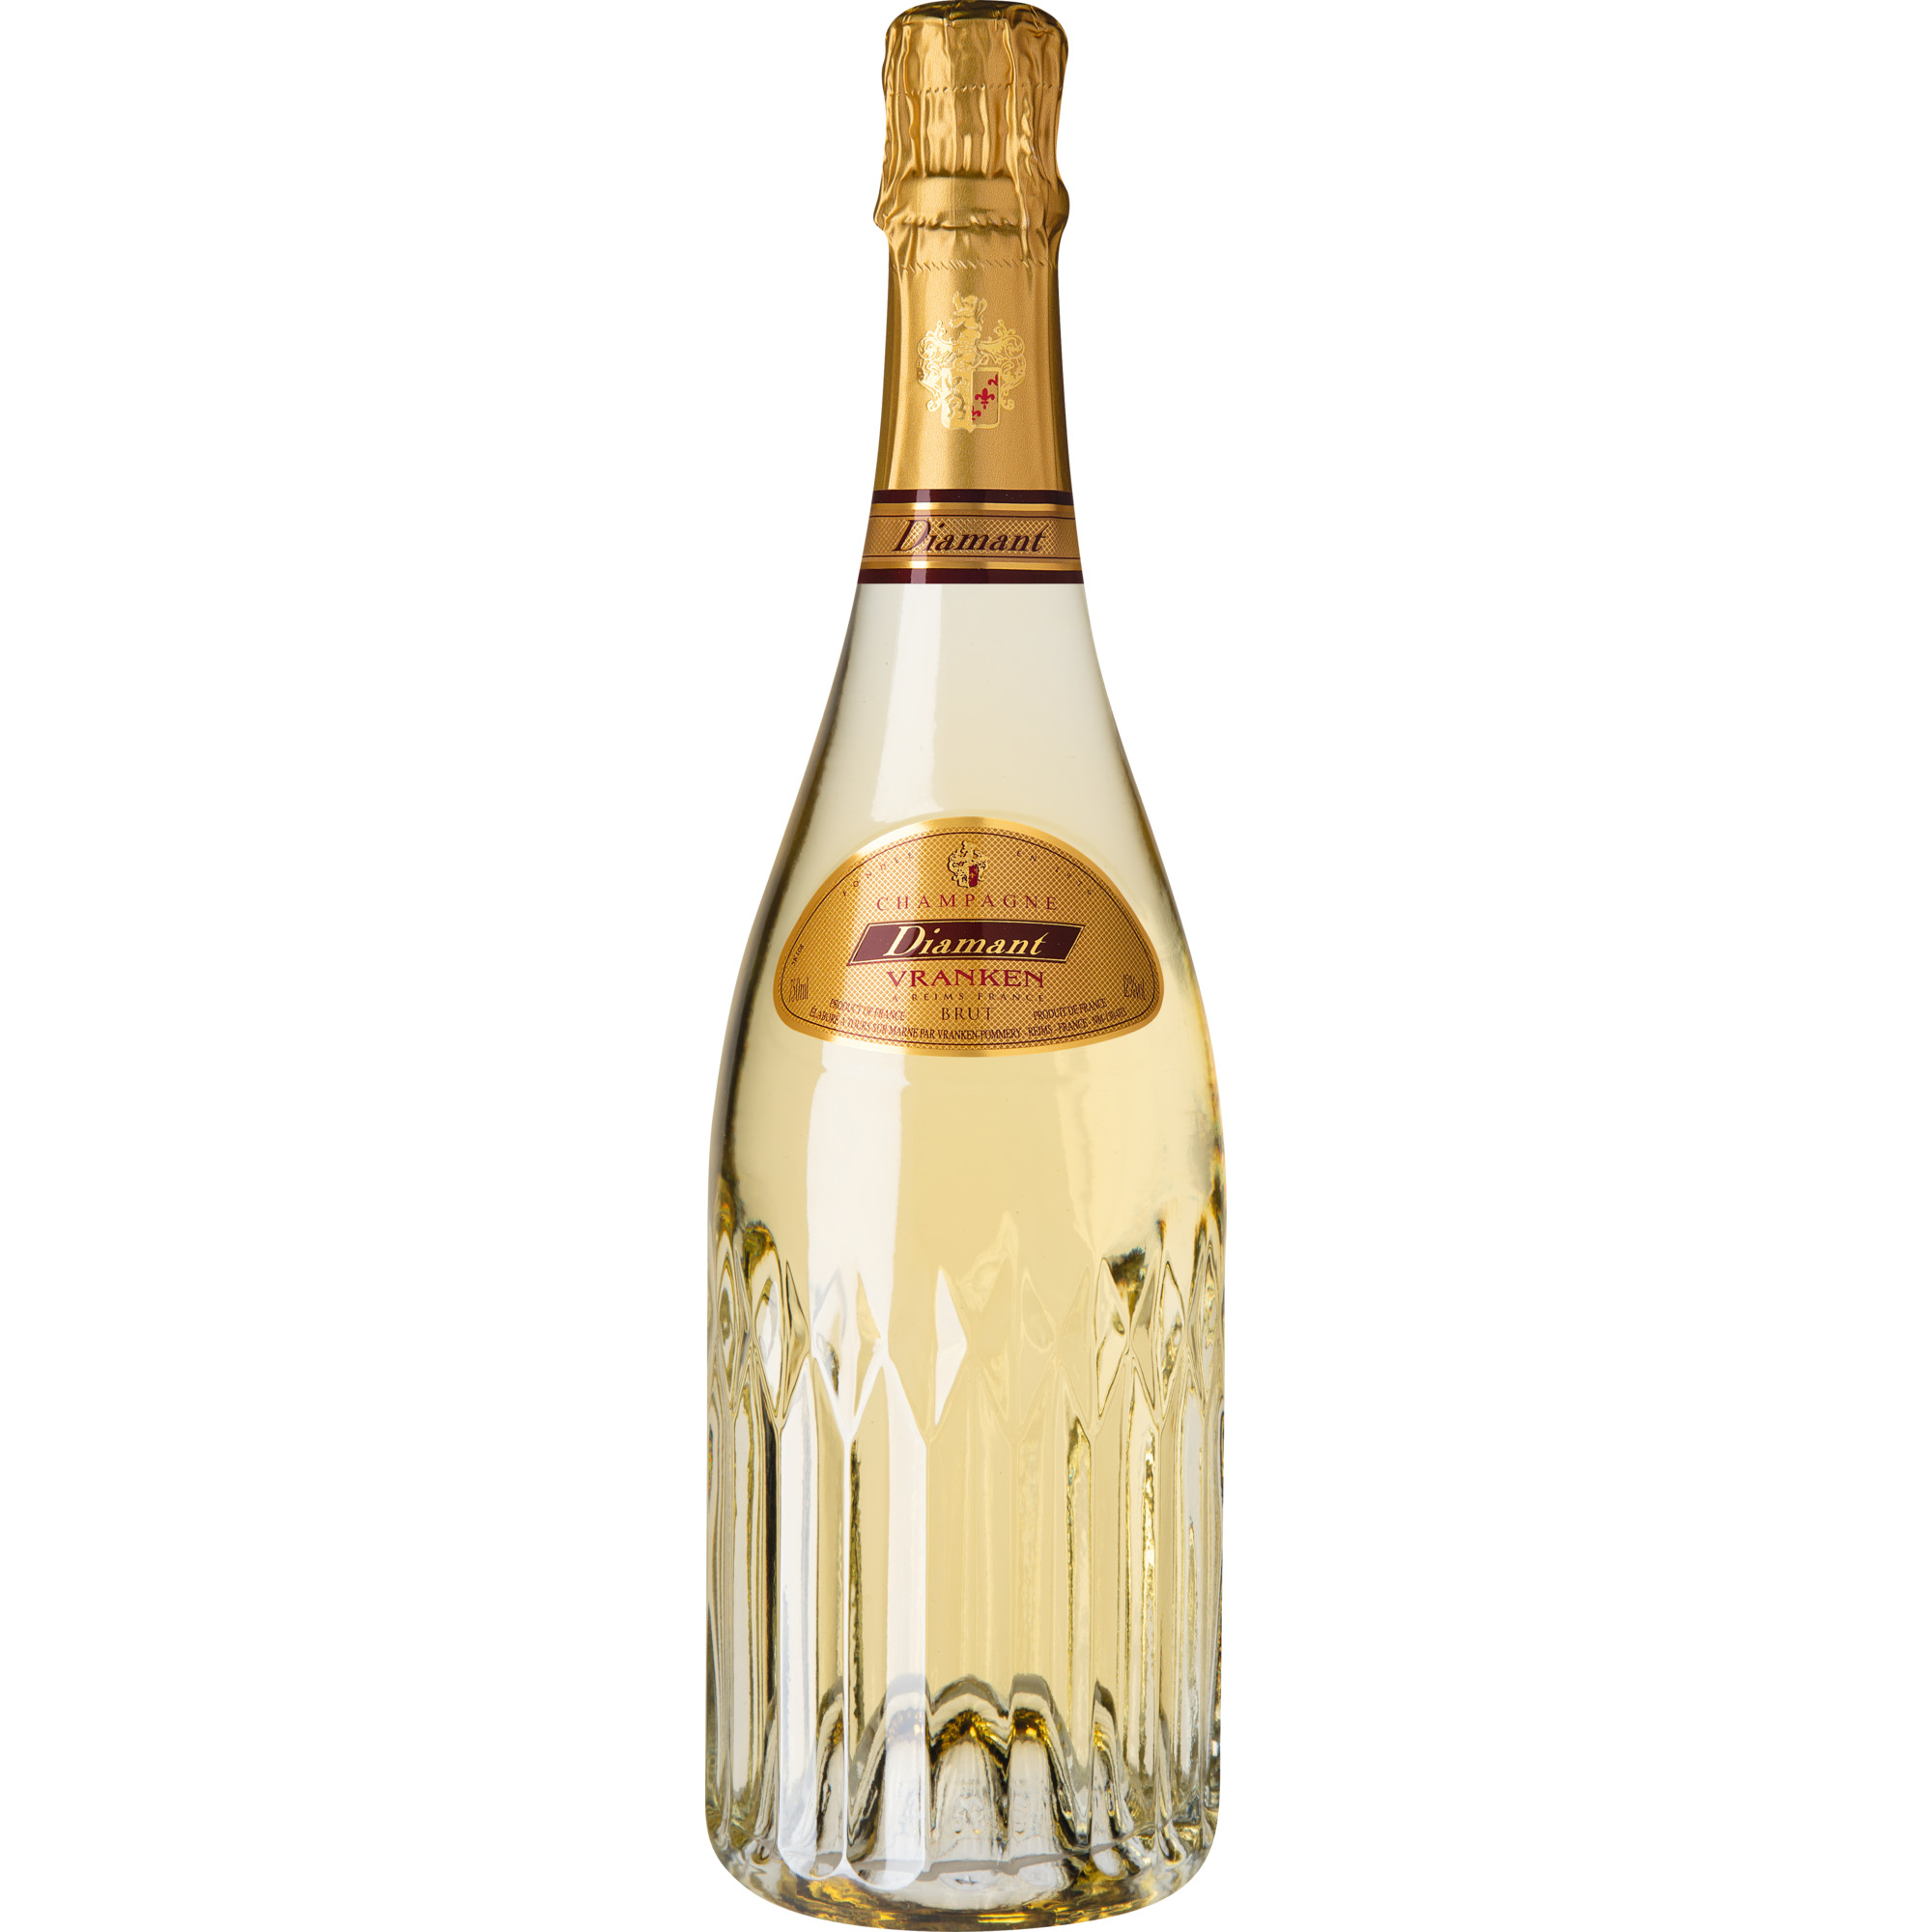 Champagne Diamant Blanc, Brut, Champagne AC, Champagne, Schaumwein Vranken-Pommery- 51689 Reims - France NM-130-033 Hawesko DE